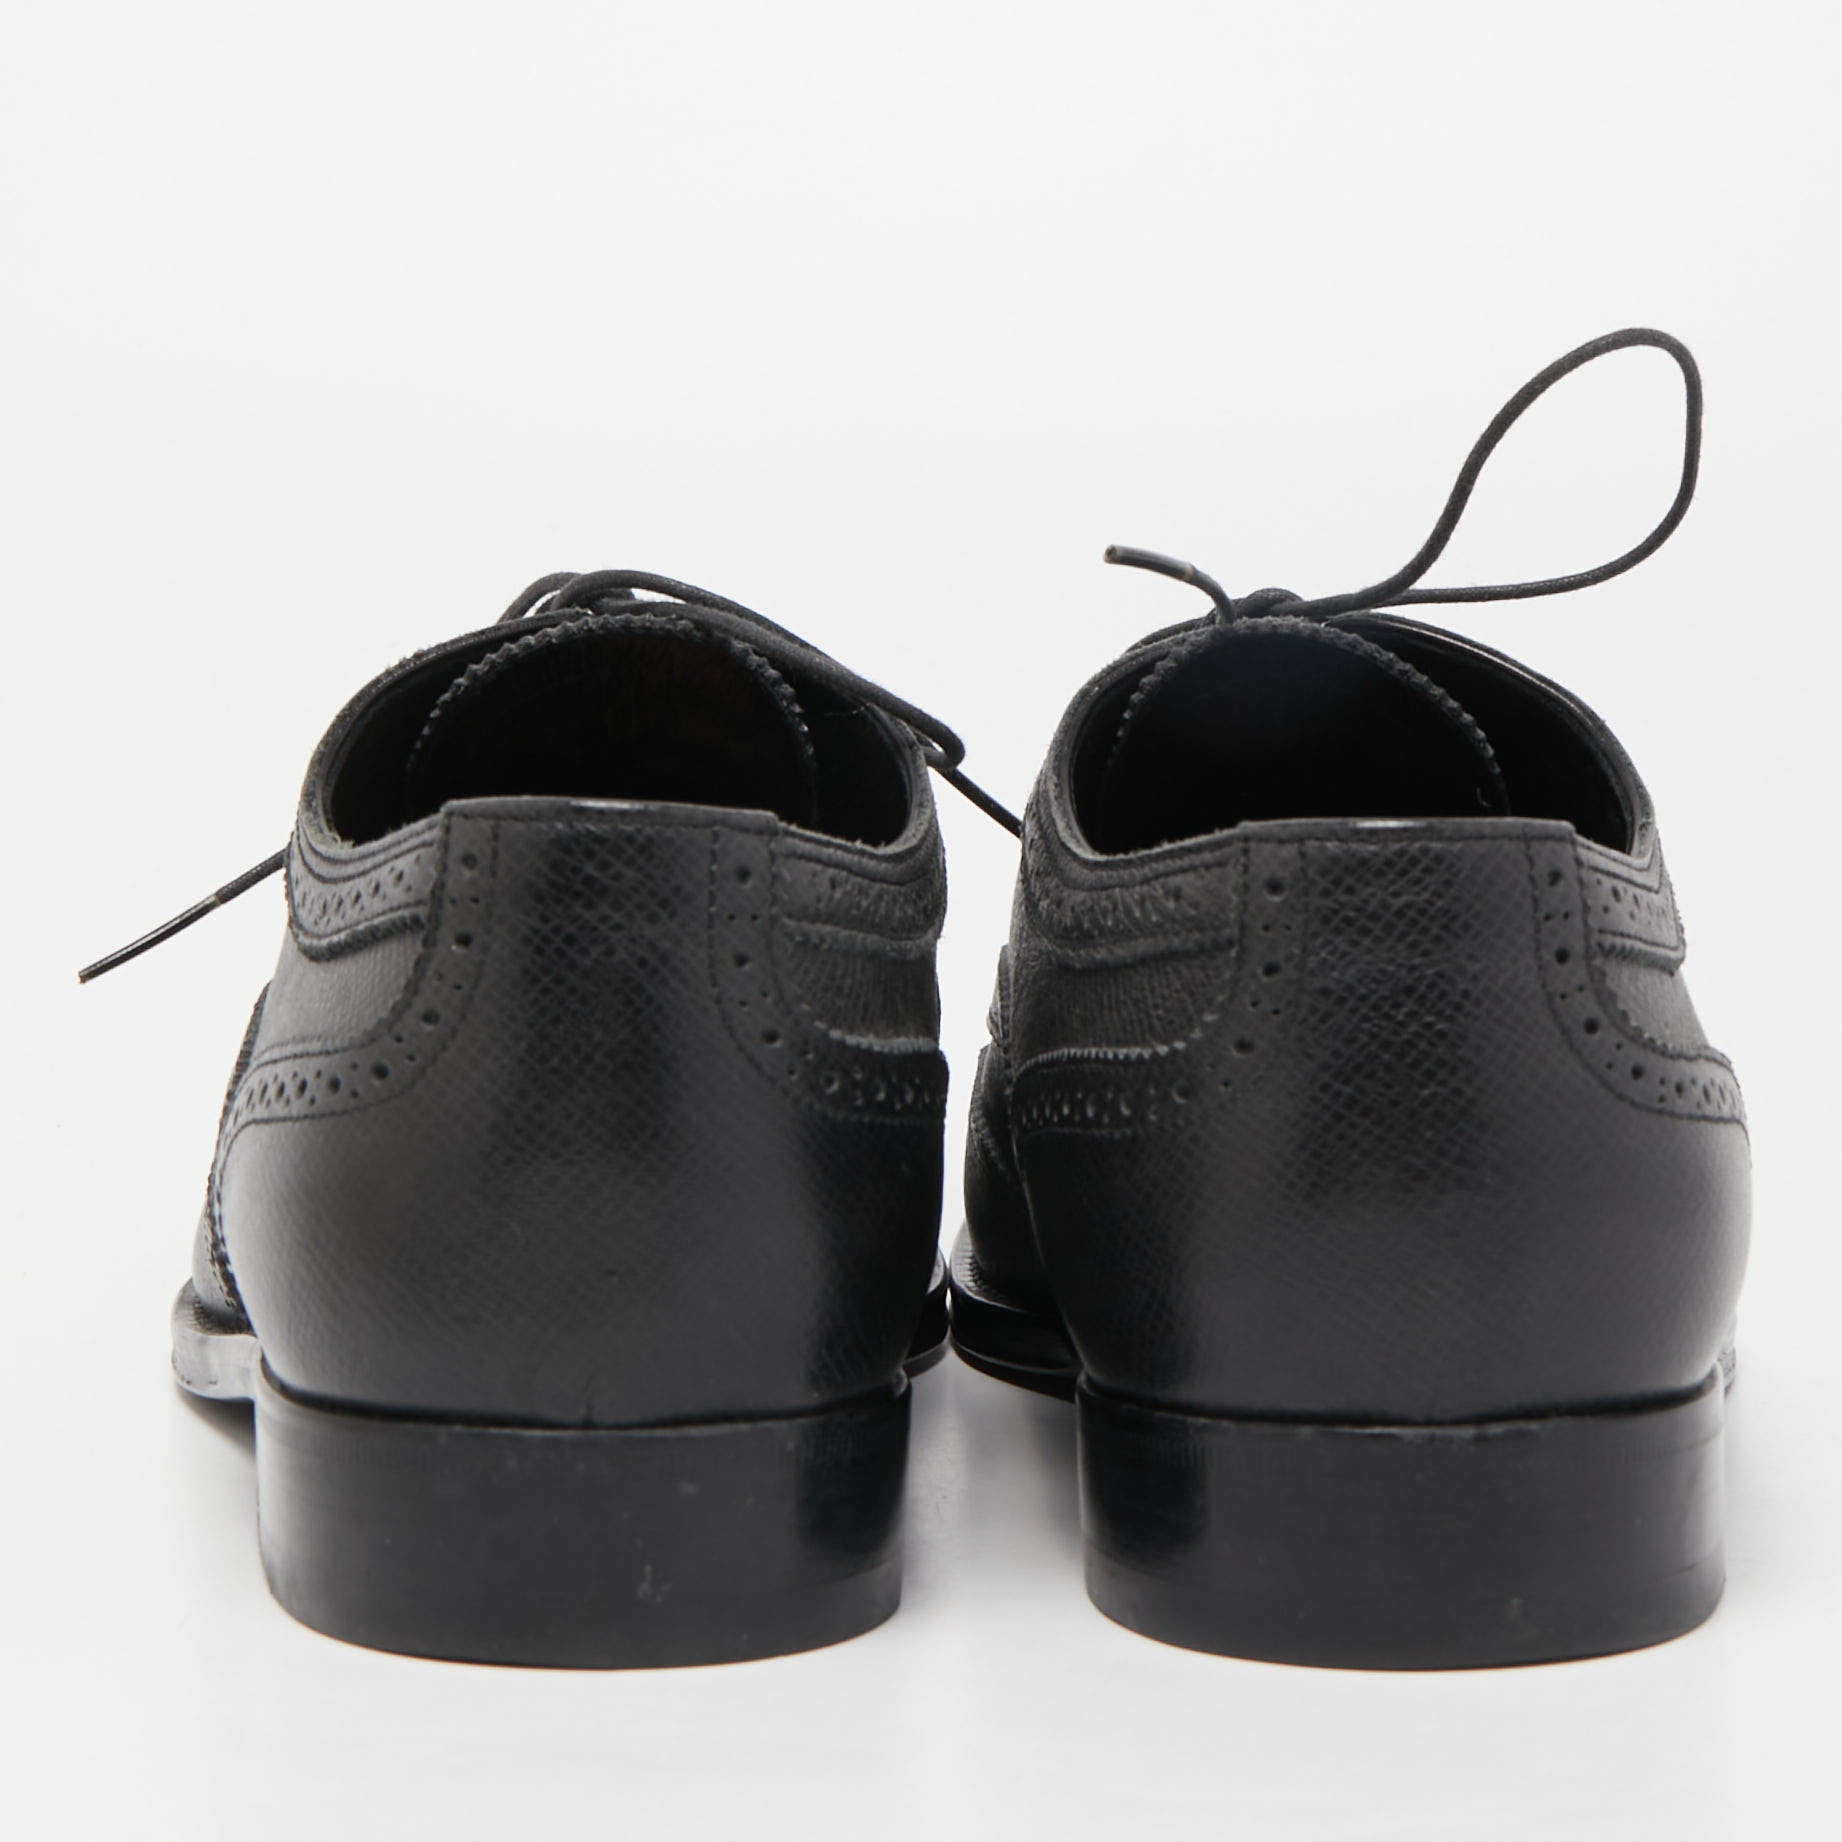 Louis Vuitton Black Patent Leather Lace Up Oxfords Size 41.5 Louis Vuitton